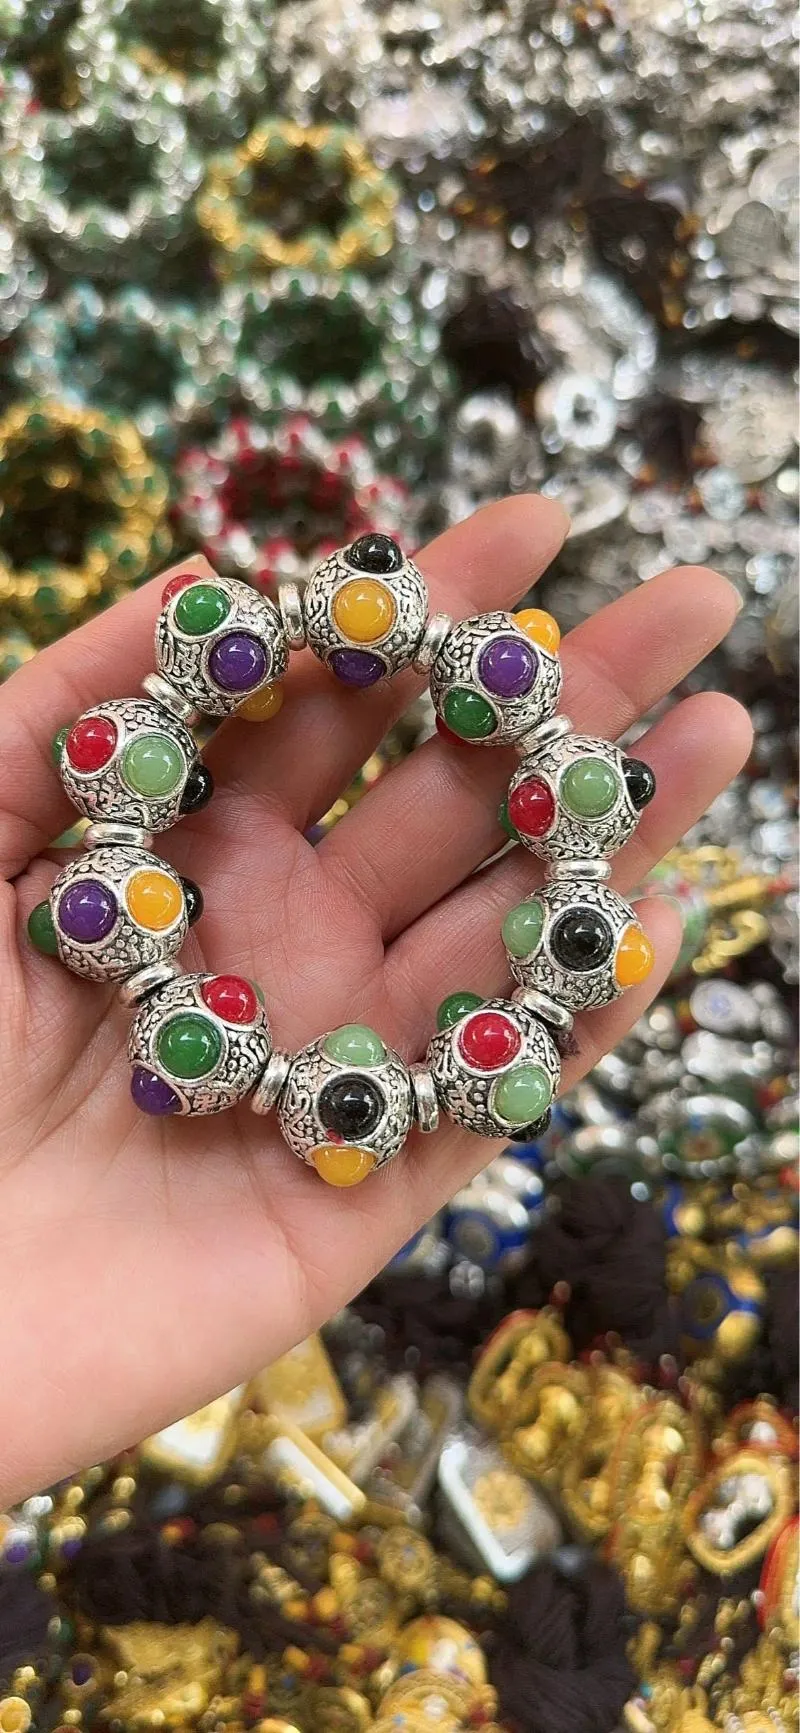 Strand en gros des bijoux multi-trésors de style ethnique Tibetan Silver Tibetan avec des hommes et des femmes colorés pour hommes et femmes